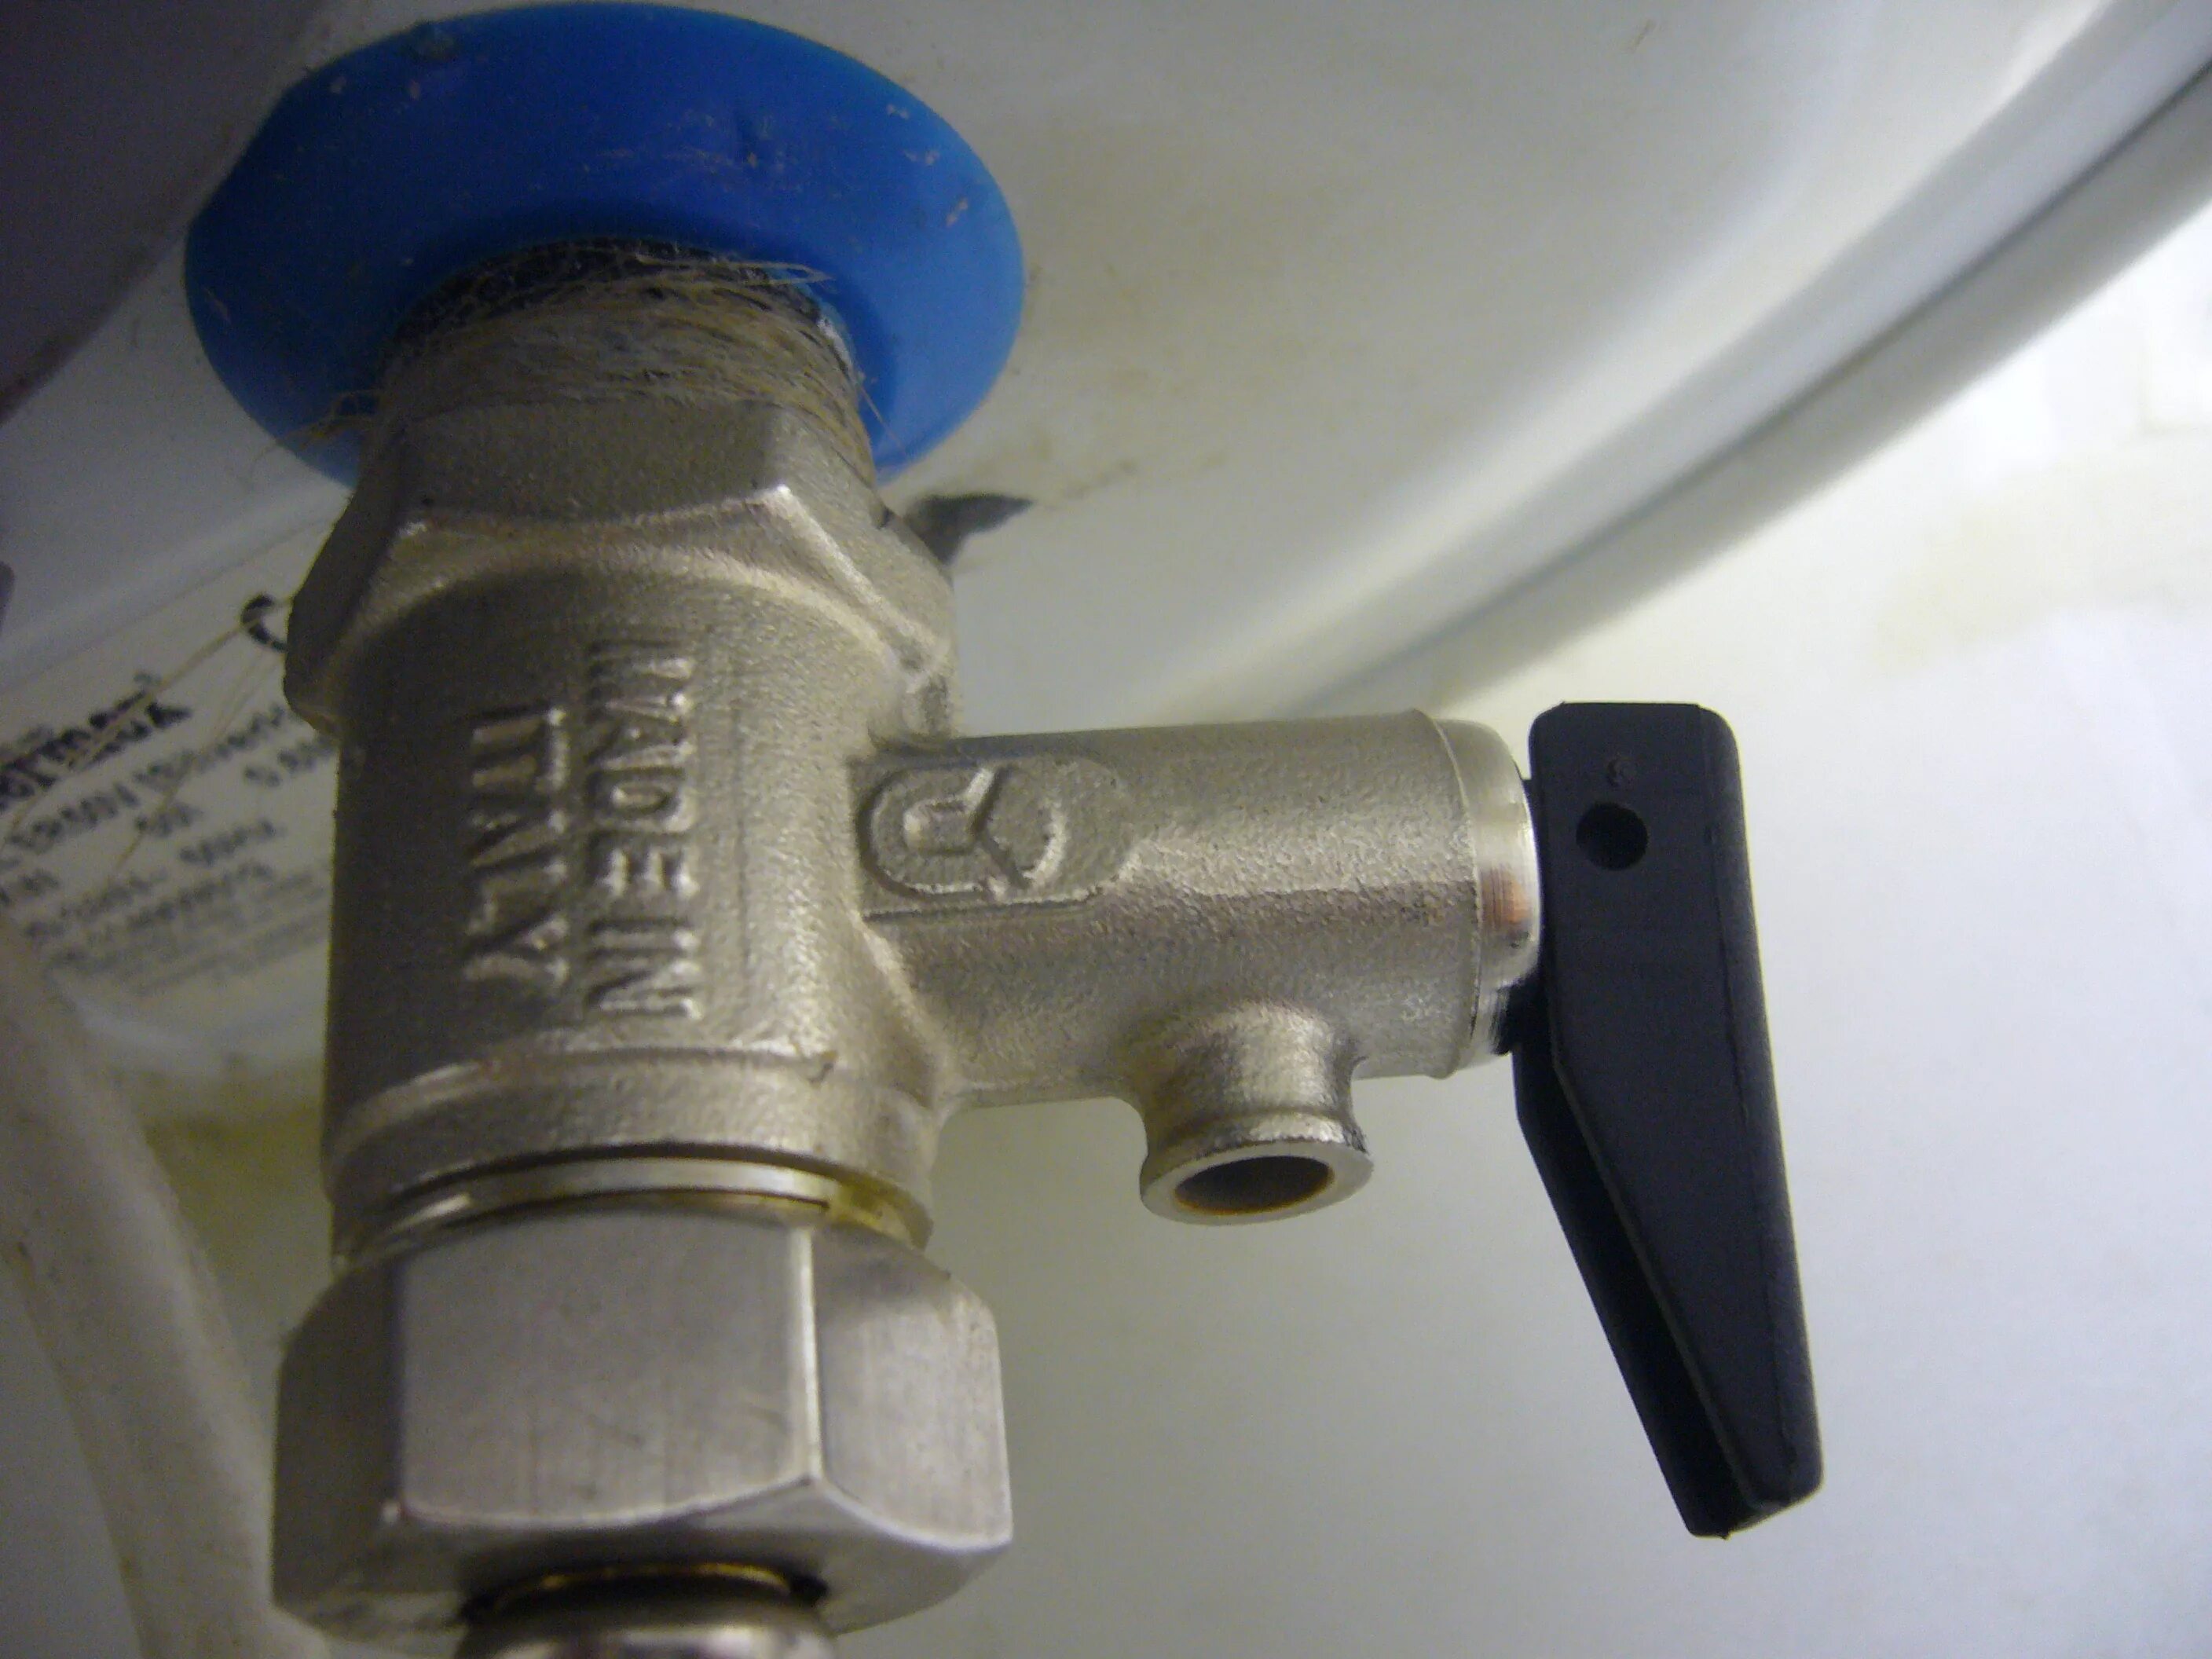 Предохранительный клапан для водонагревателя Электролюкс. Предохранительный клапан давления для водонагревателя Электролюкс. Предохранительный сливной клапан водонагревателя Электролюкс. Предохранительный клапан для водонагревателя Zanussi. Предохранительный клапан капает вода